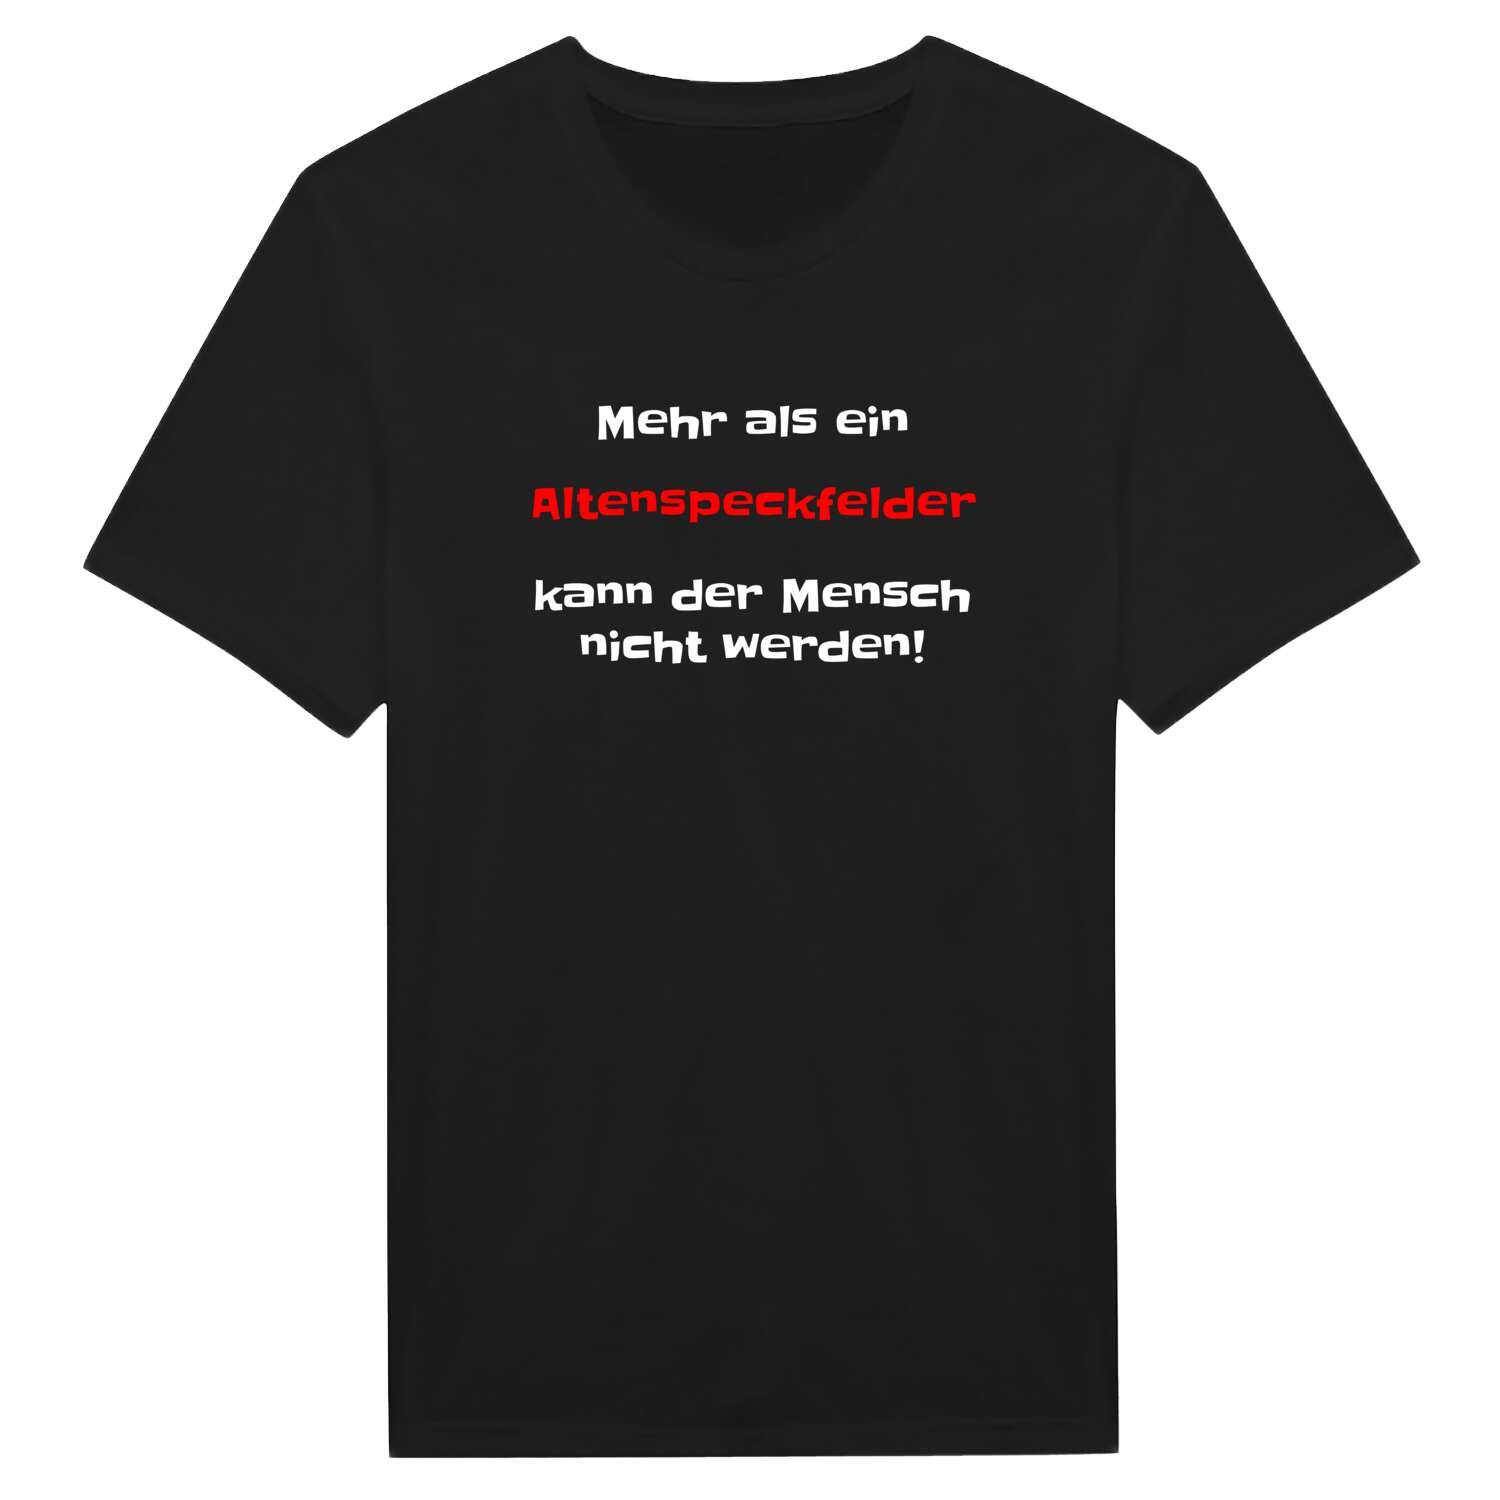 Altenspeckfeld T-Shirt »Mehr als ein«